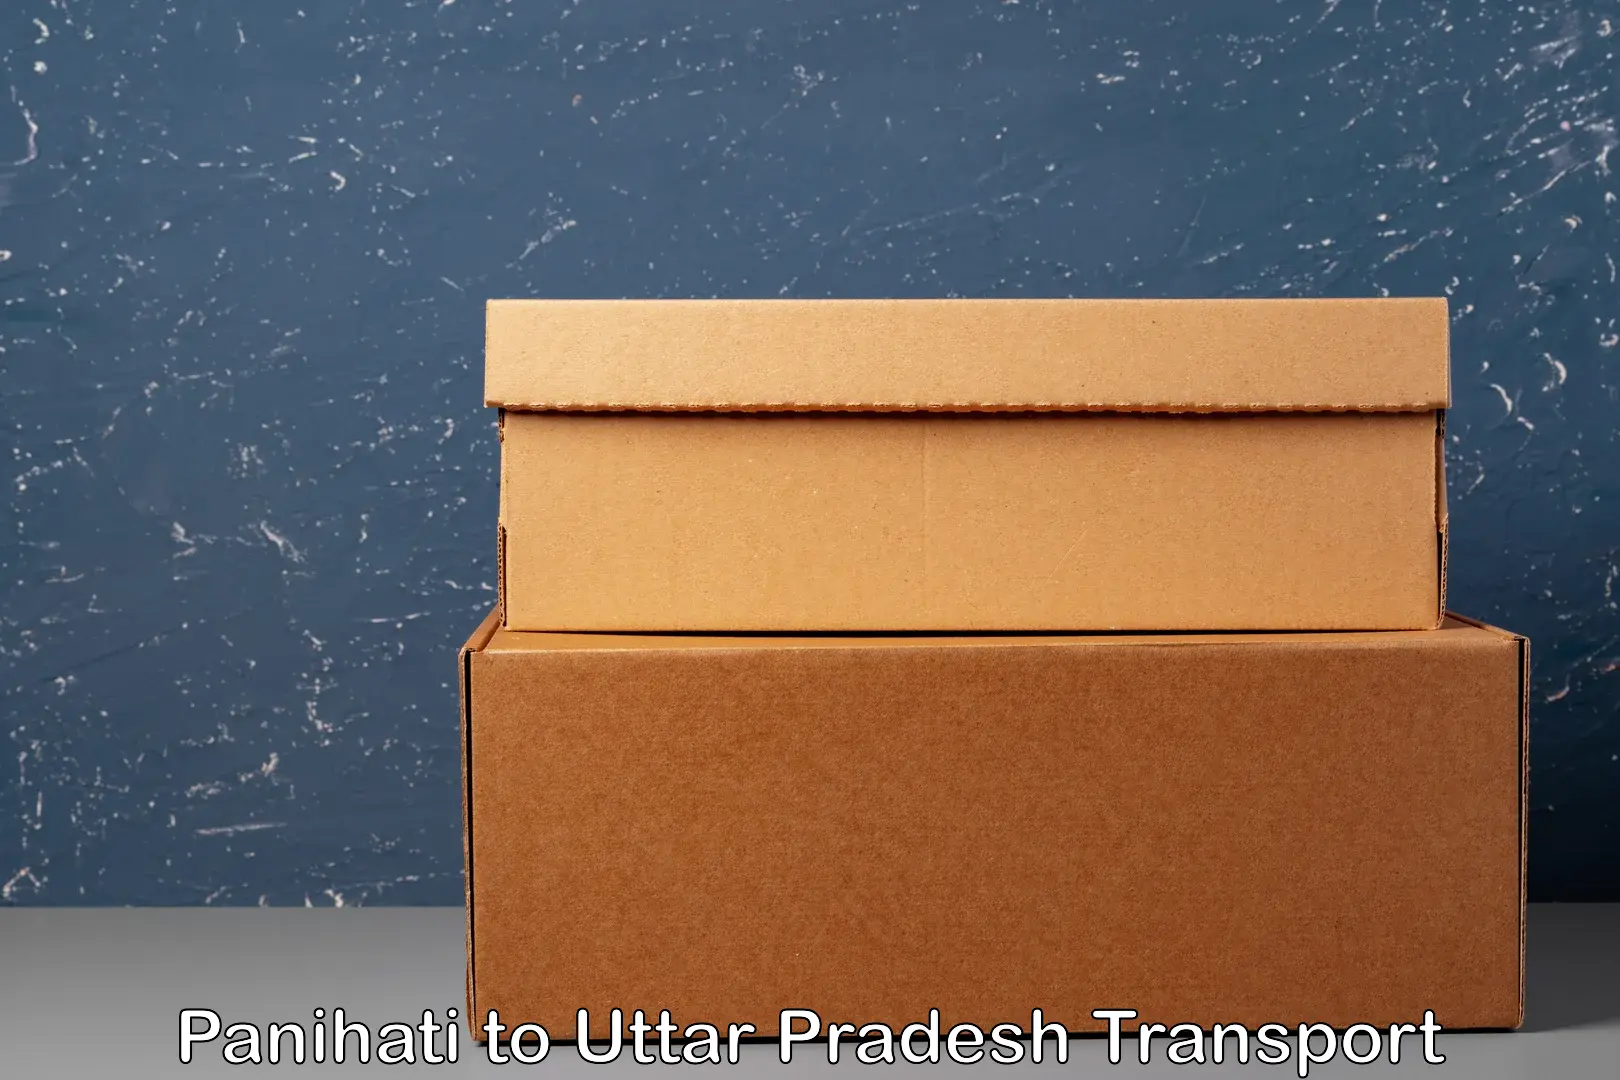 Shipping services Panihati to Kushinagar